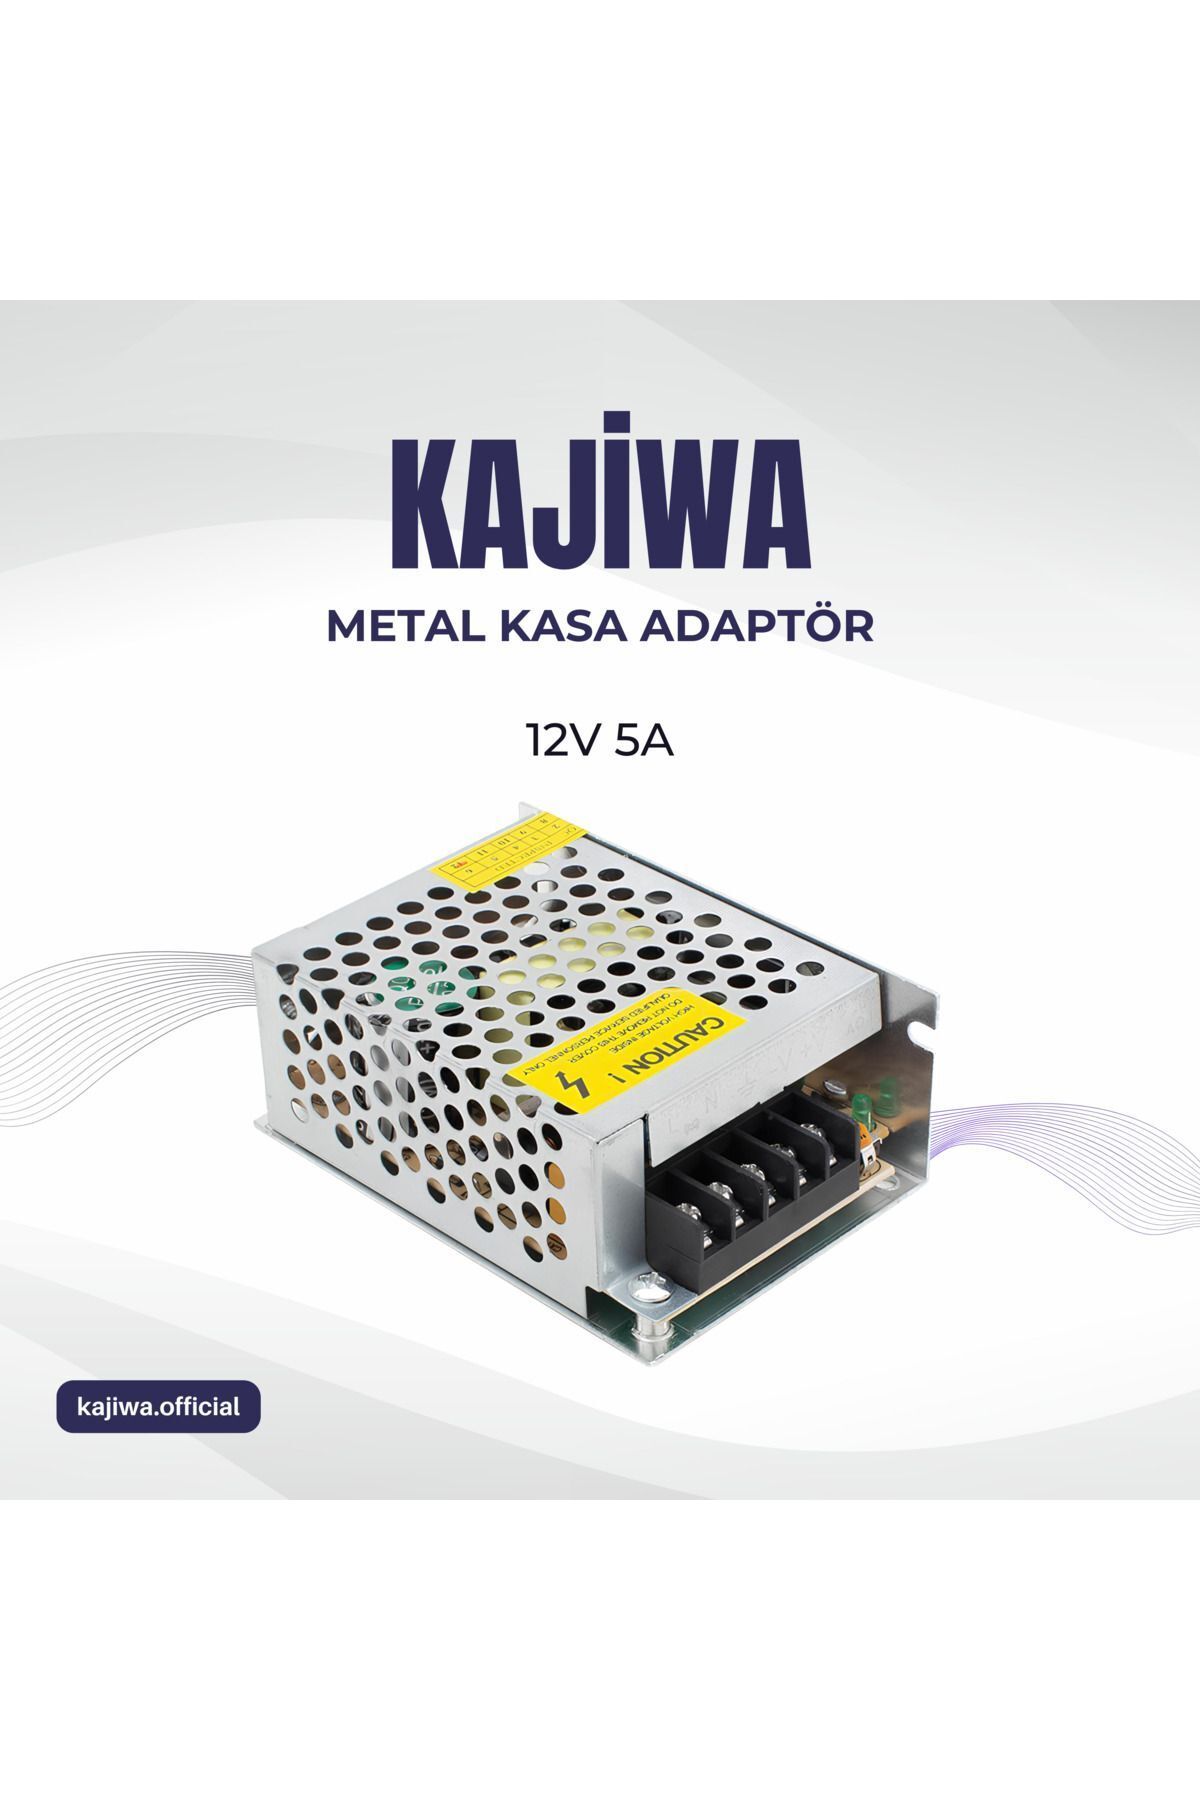 KAJİWA Mervesan 12v 5a Metal Kasa Adaptör - Trafo 60 Watt -mrwpower